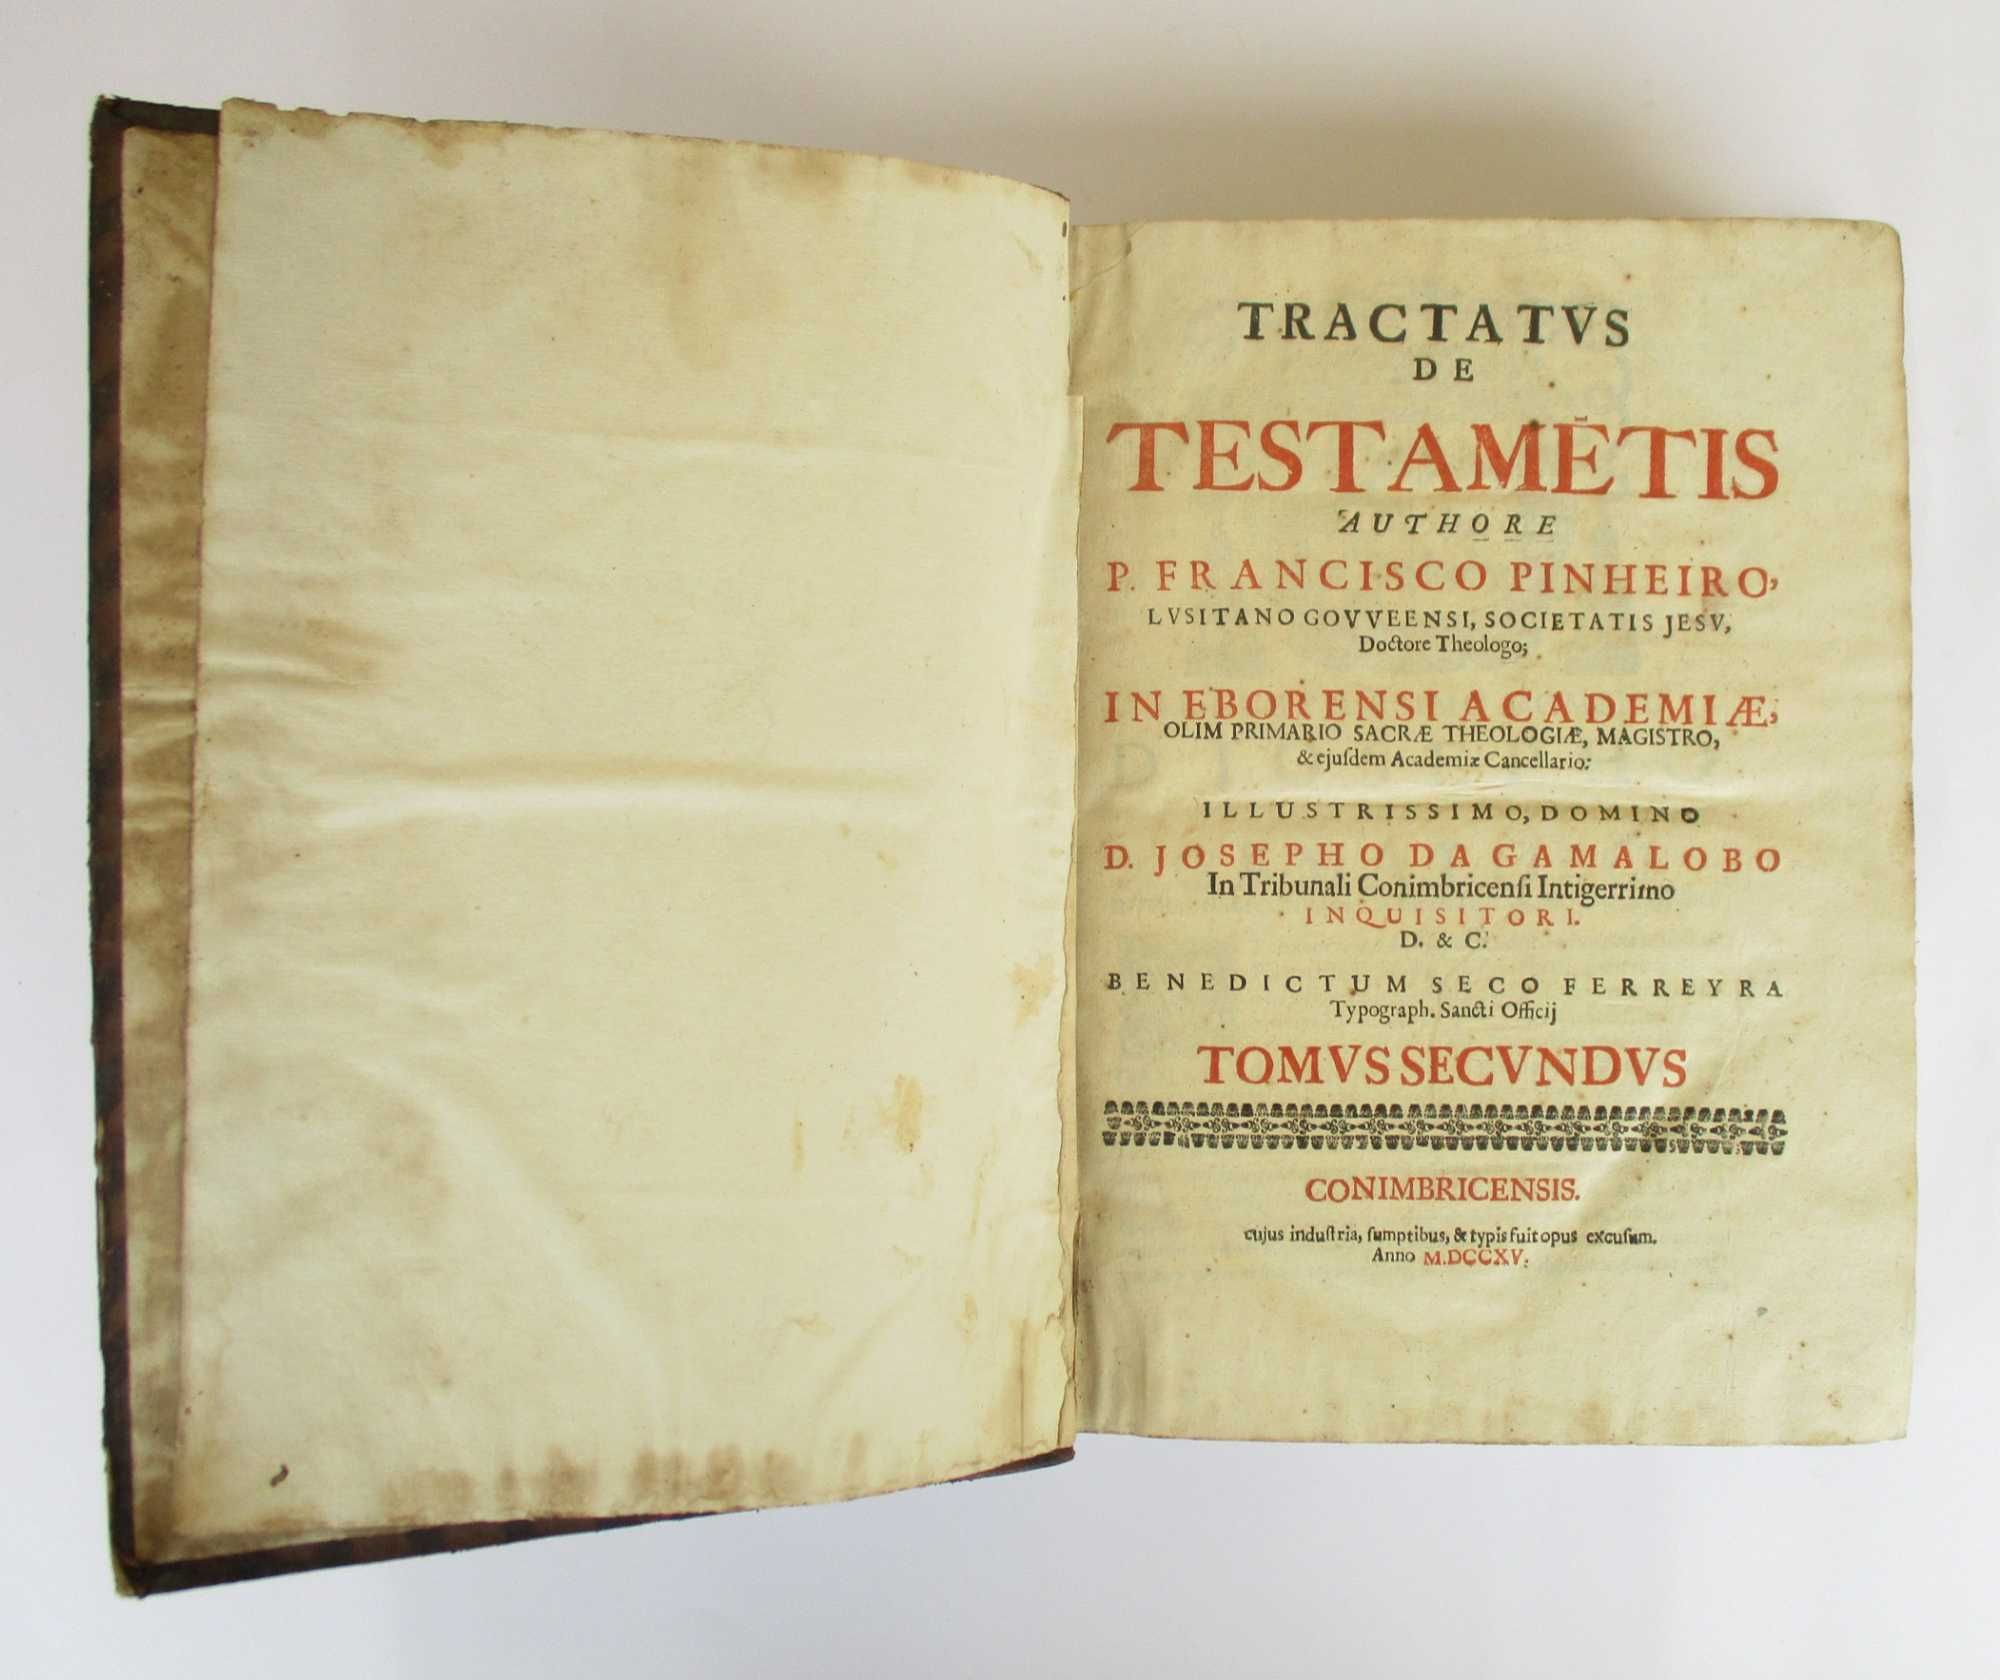 "Tractatus de Testametis" segundo tomo de P. Francisco Pinheiro 1715